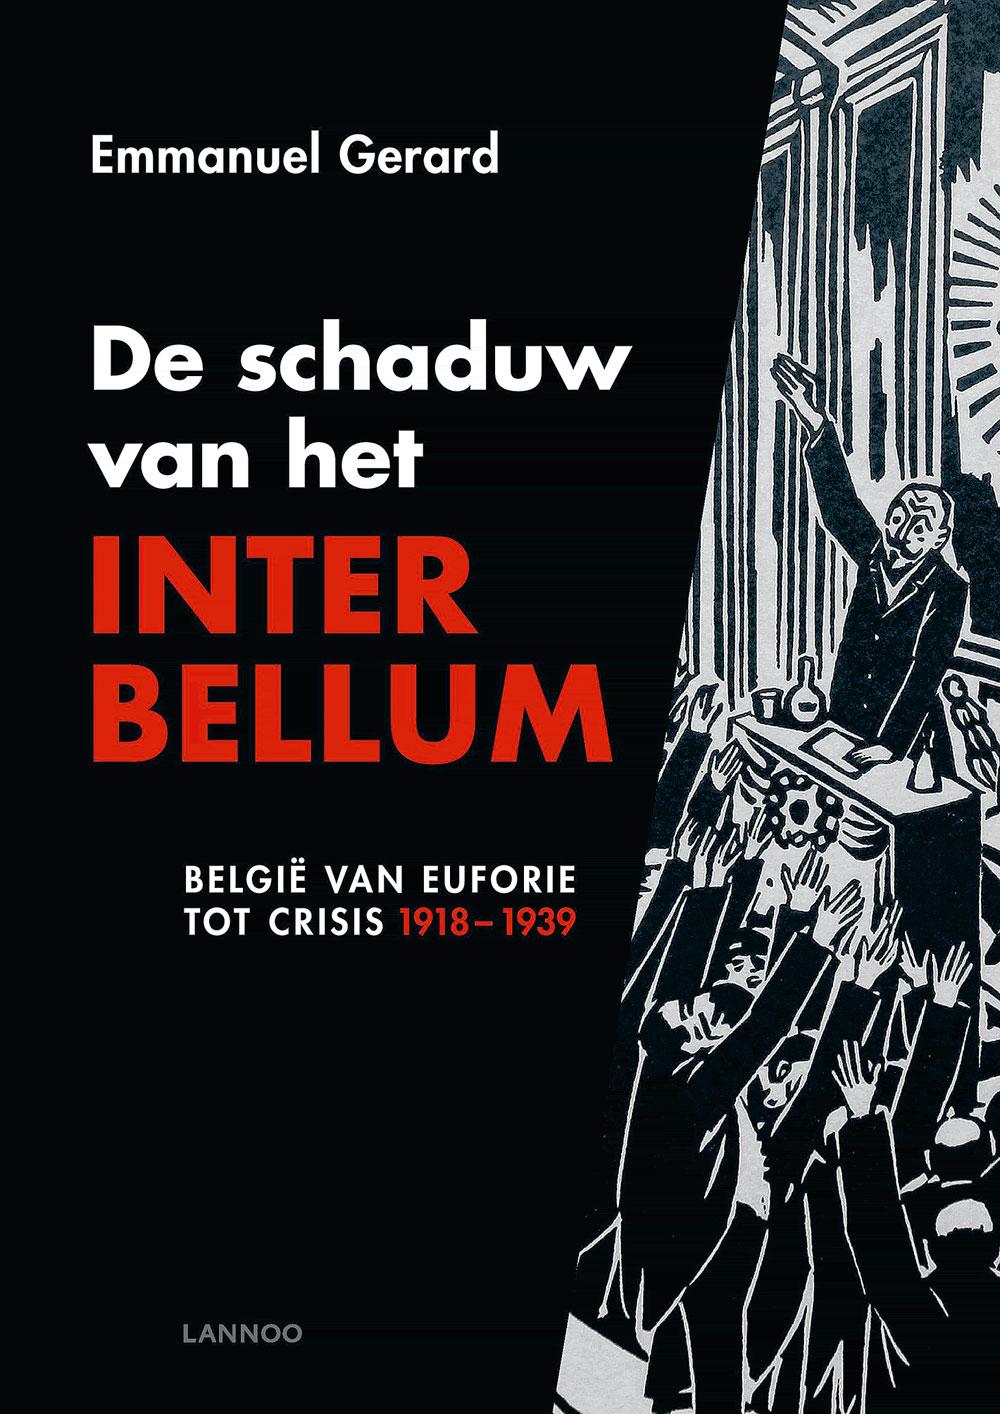 Emmanuel Gerard, De schaduw van het Interbellum. België van euforie tot crisis, Lannoo, 378 pagina's, 24,99 euro.